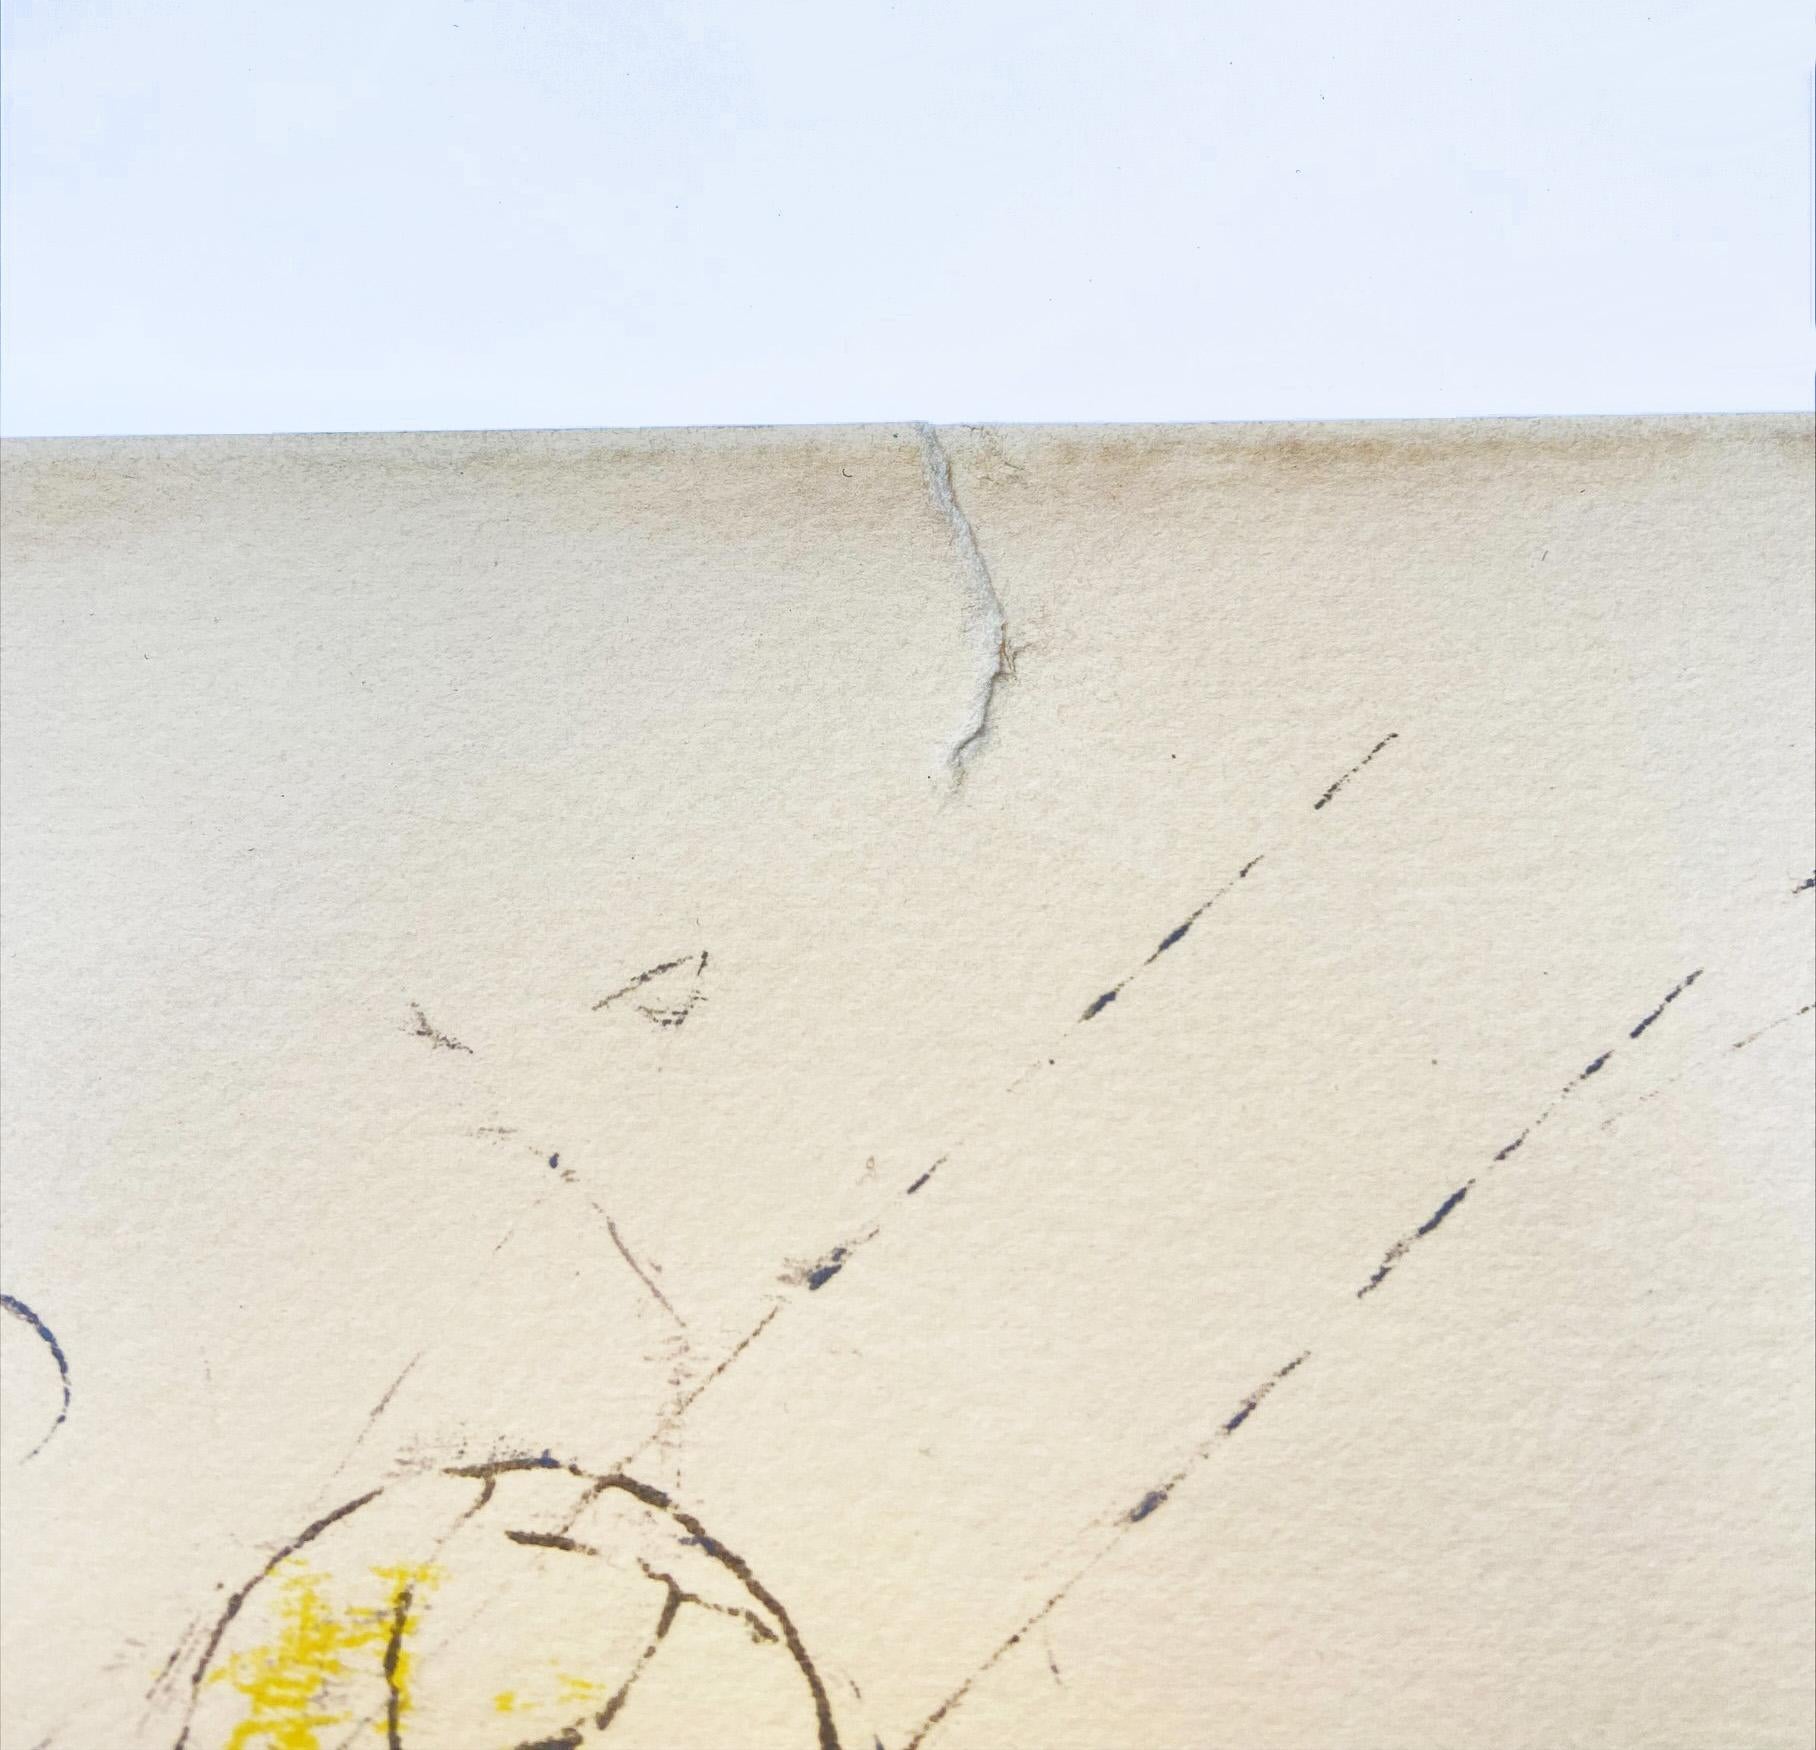 ROBERTO MATTA - Ohne Titel (Architektur)
Lithographie signiert und nummeriert auf 125
1969
Déchirure sur le haut de l'œuvre 
75,5x56
490€